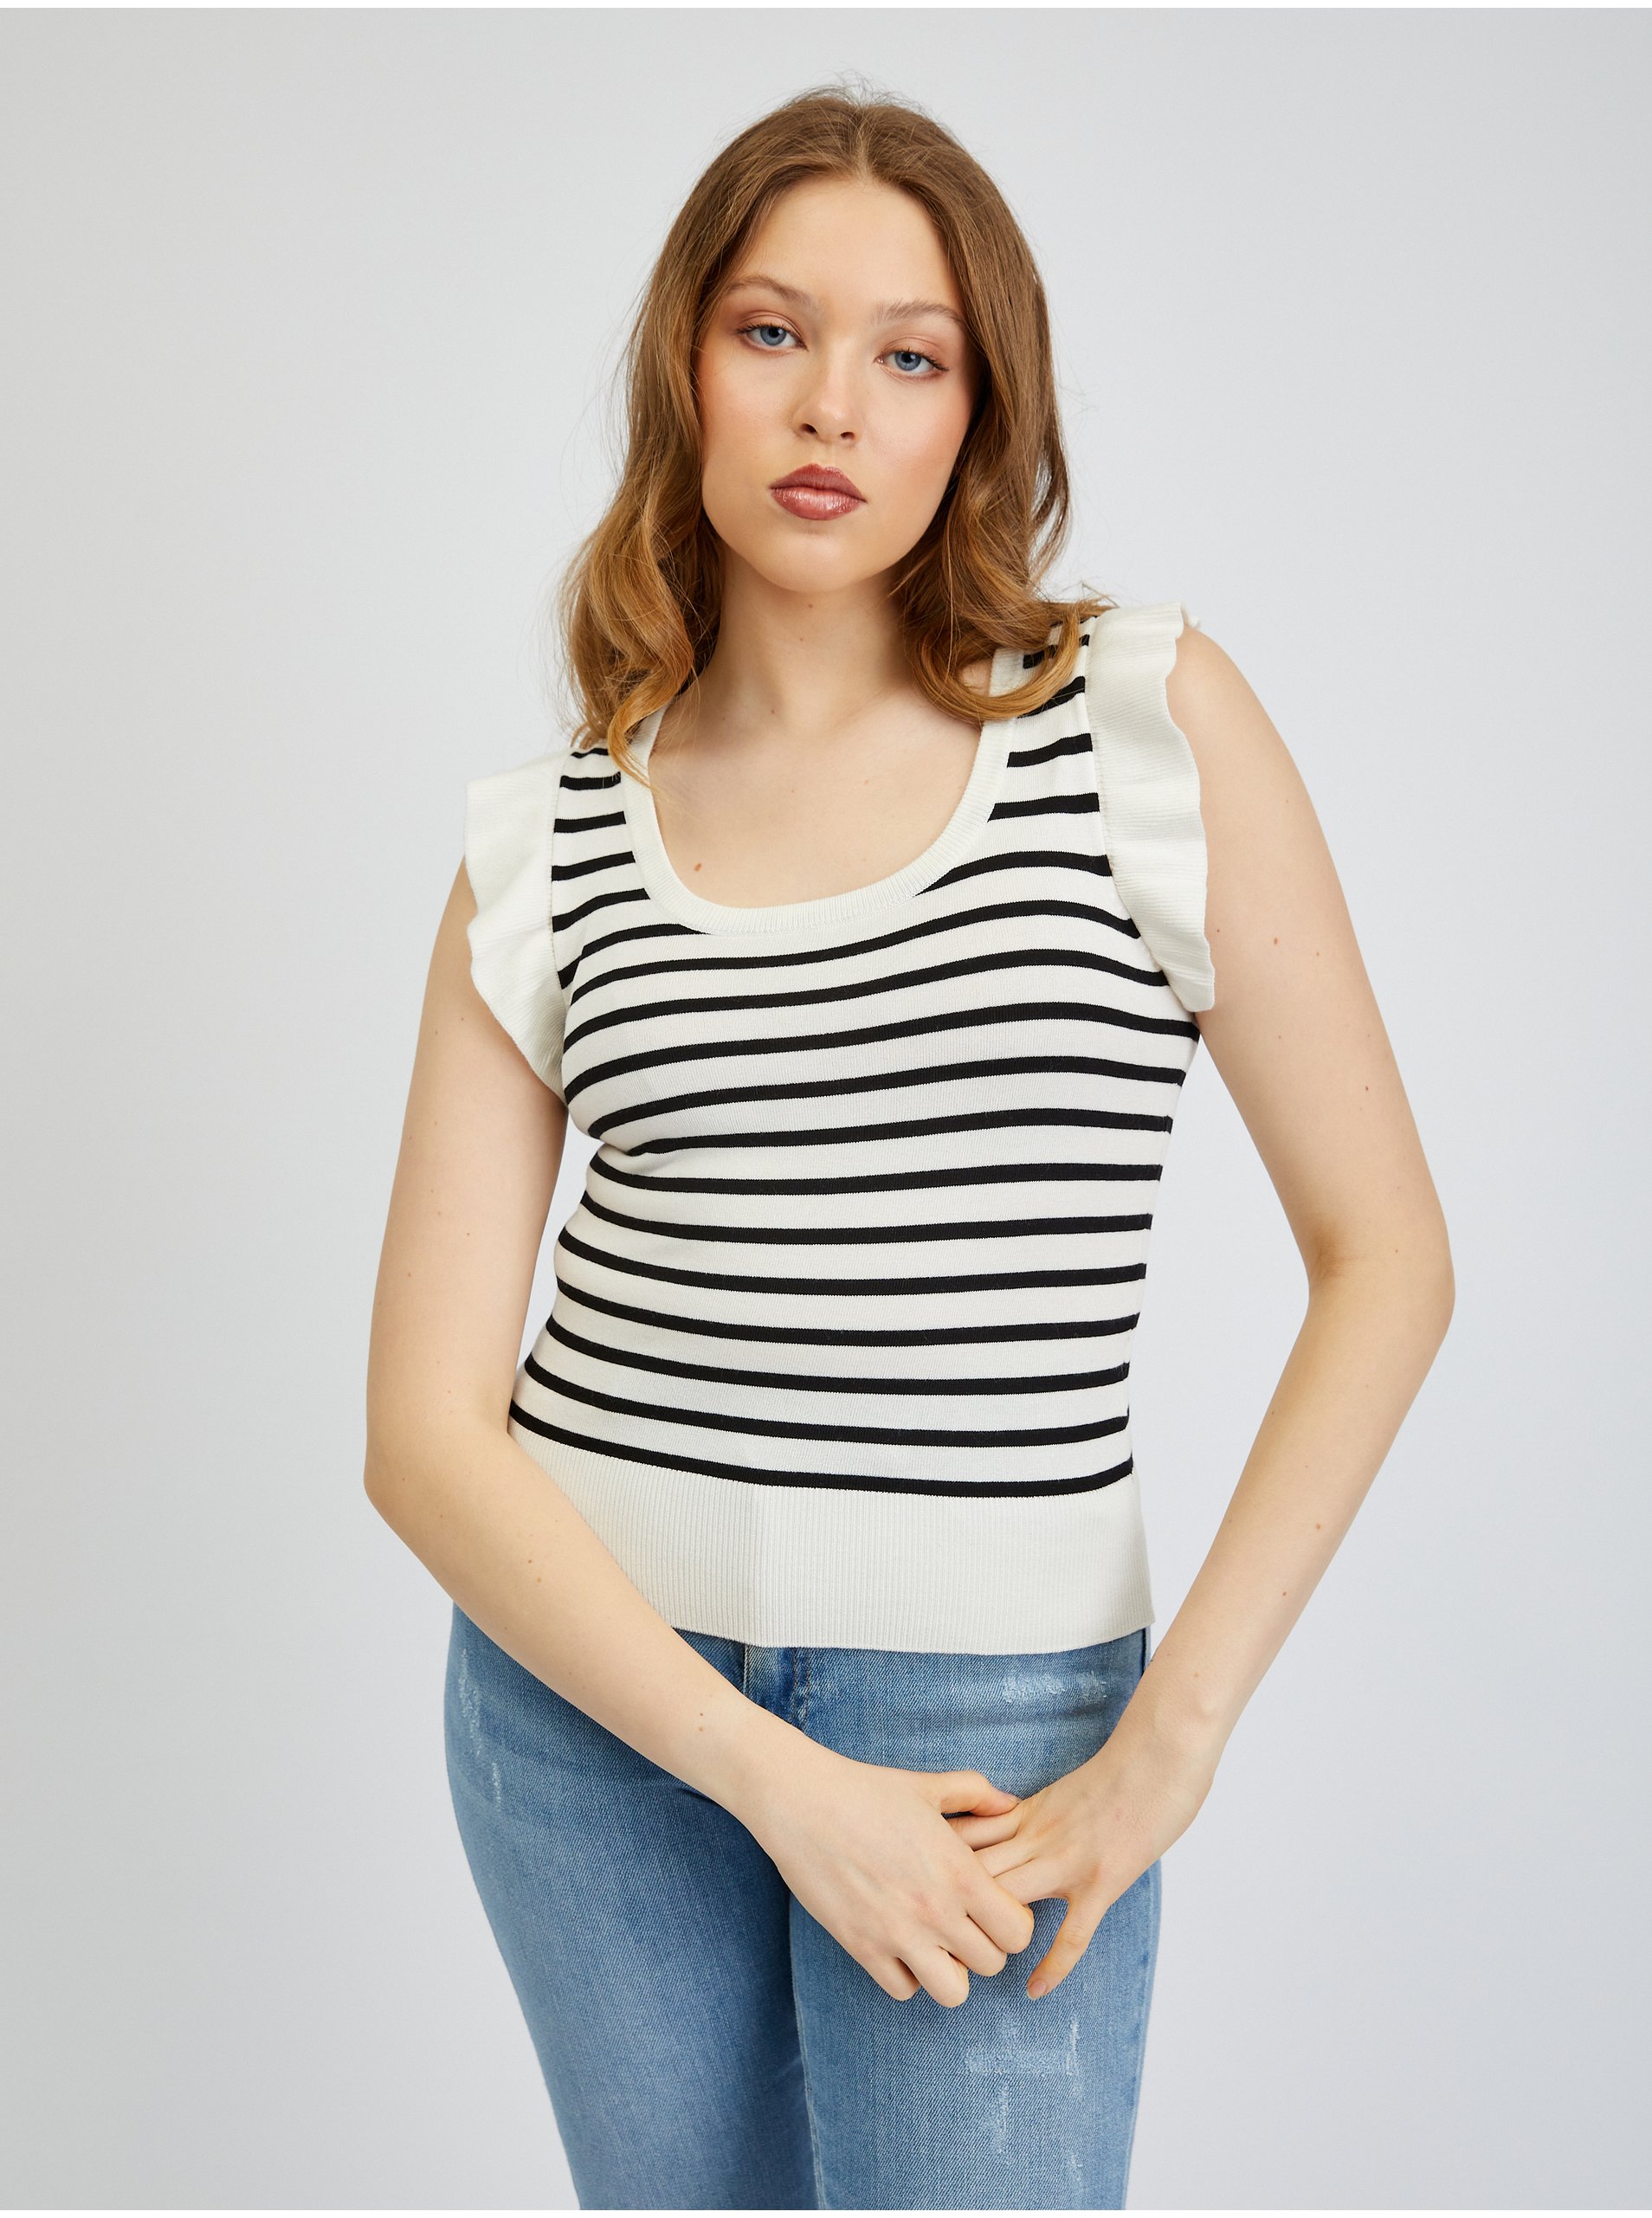 E-shop Černo-krémové dámské úpletové tričko ORSAY